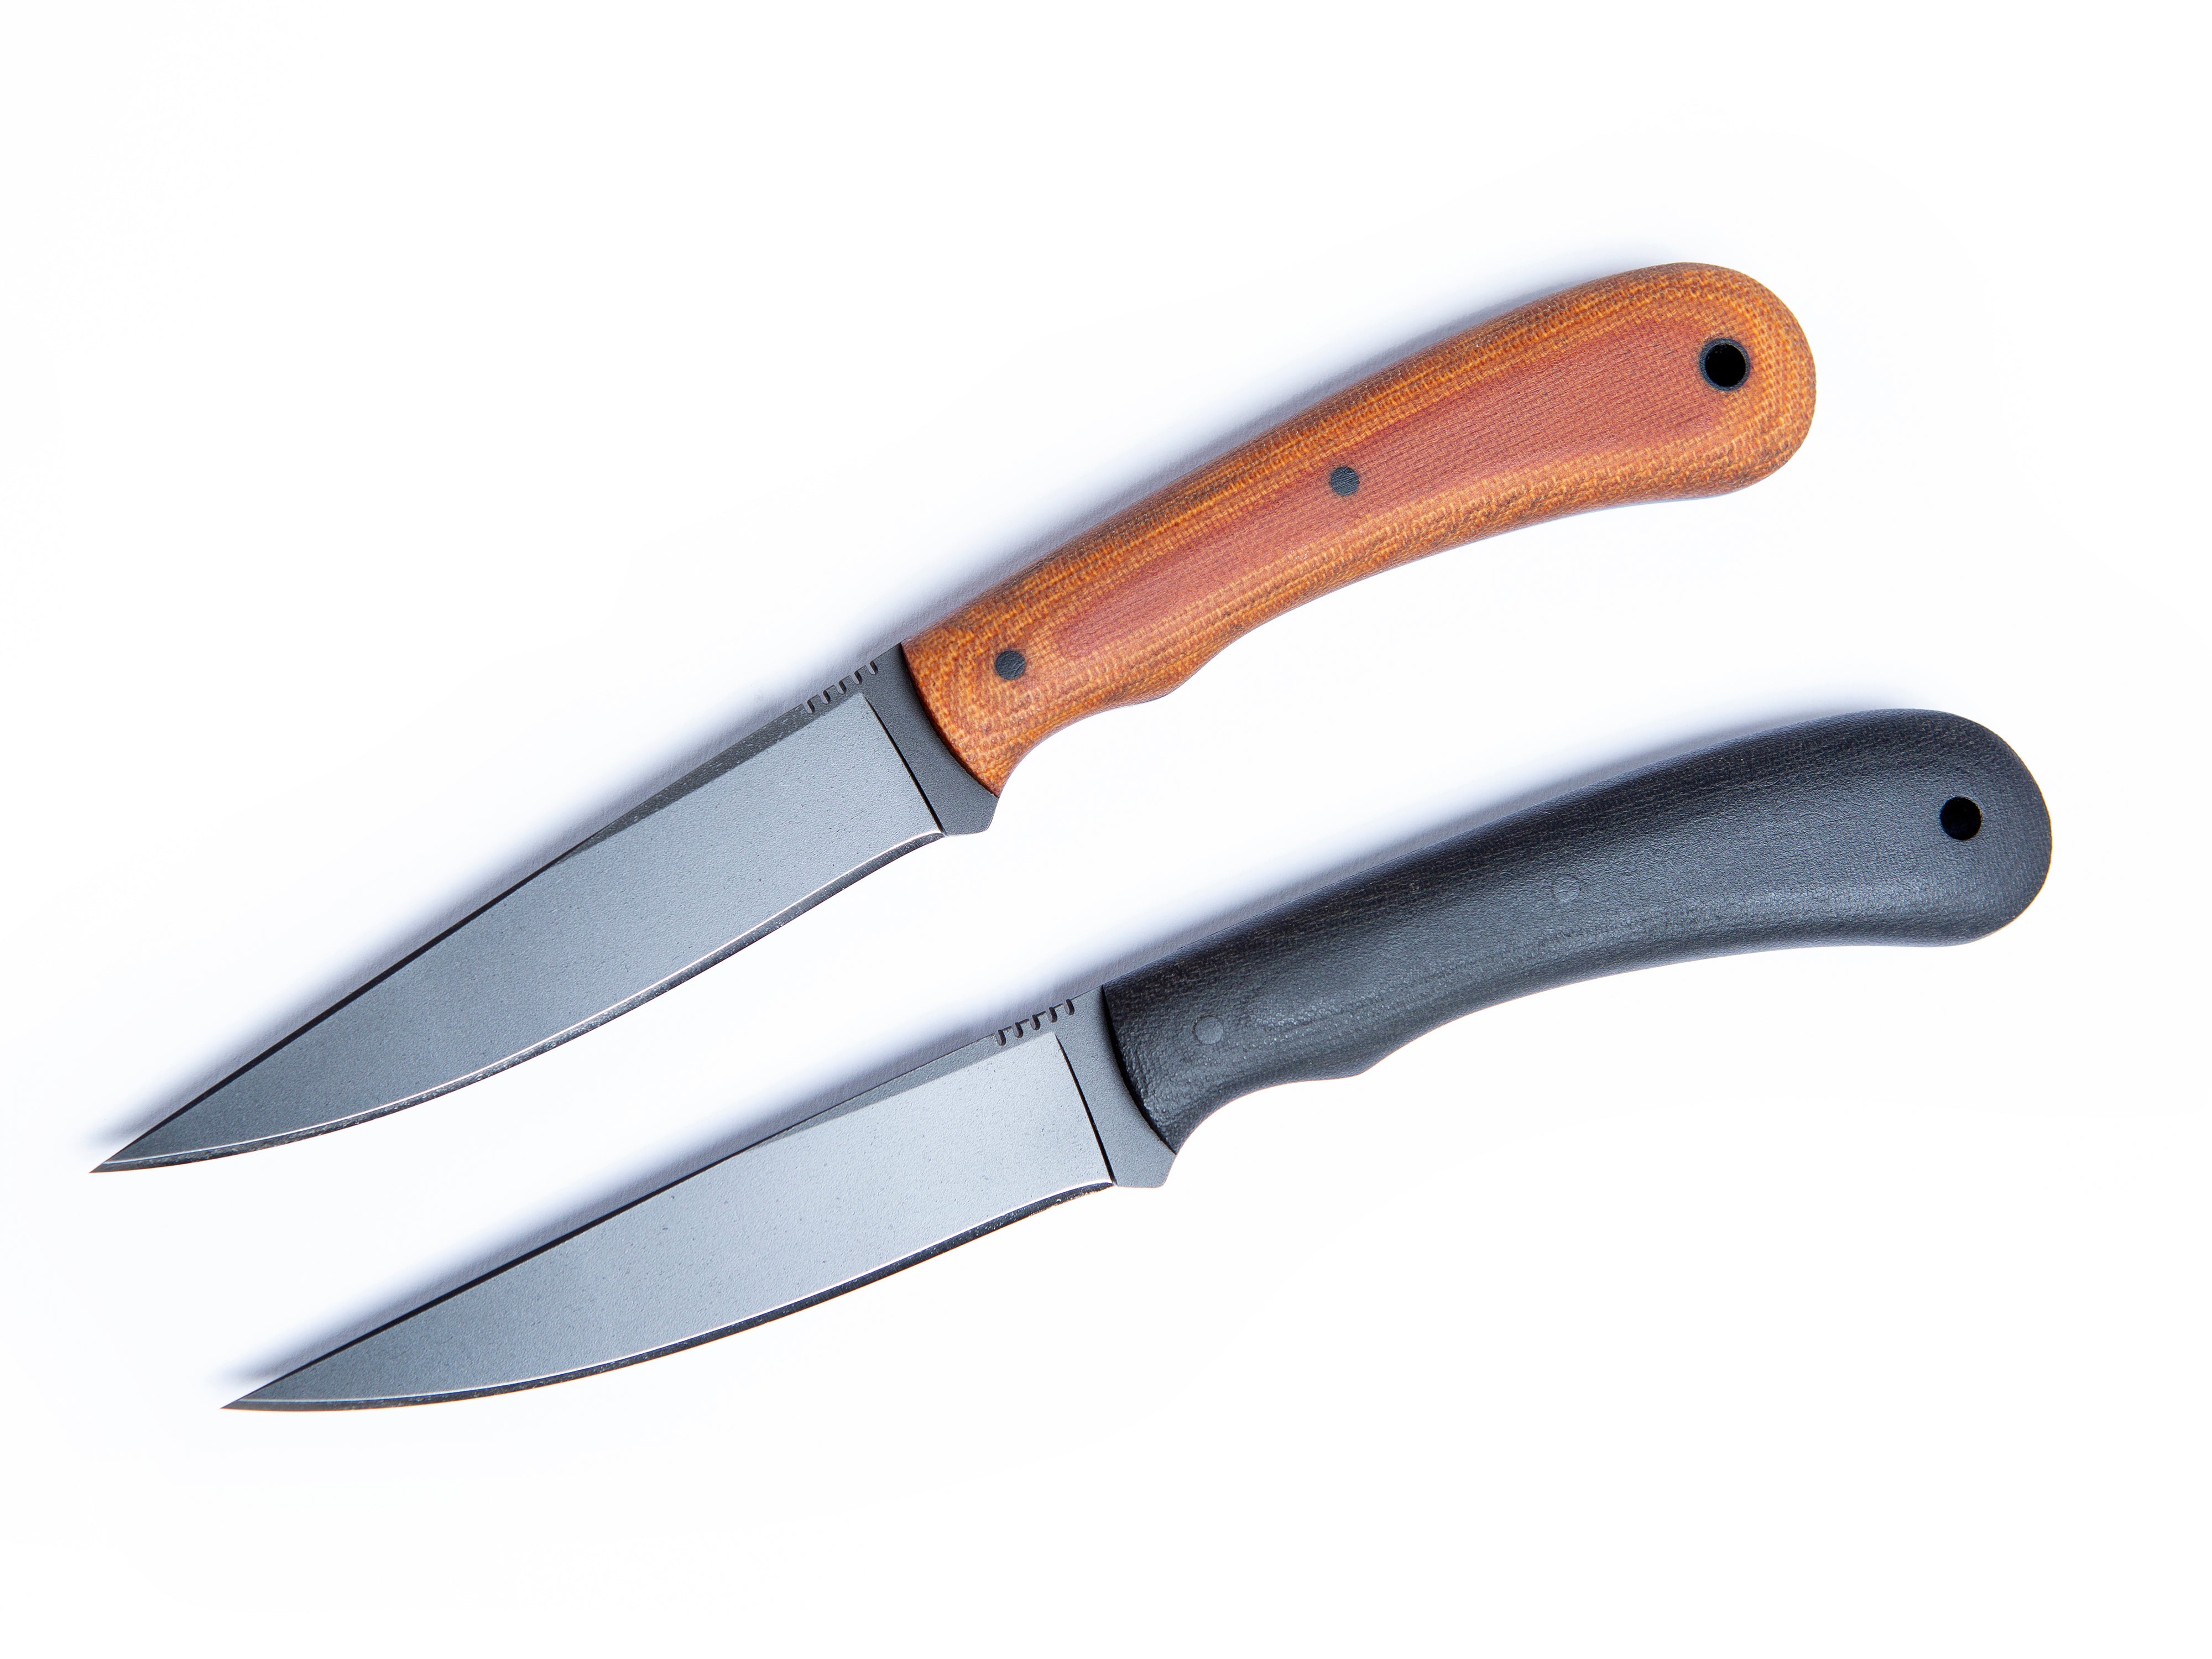 WK Operator – Winkler Knives